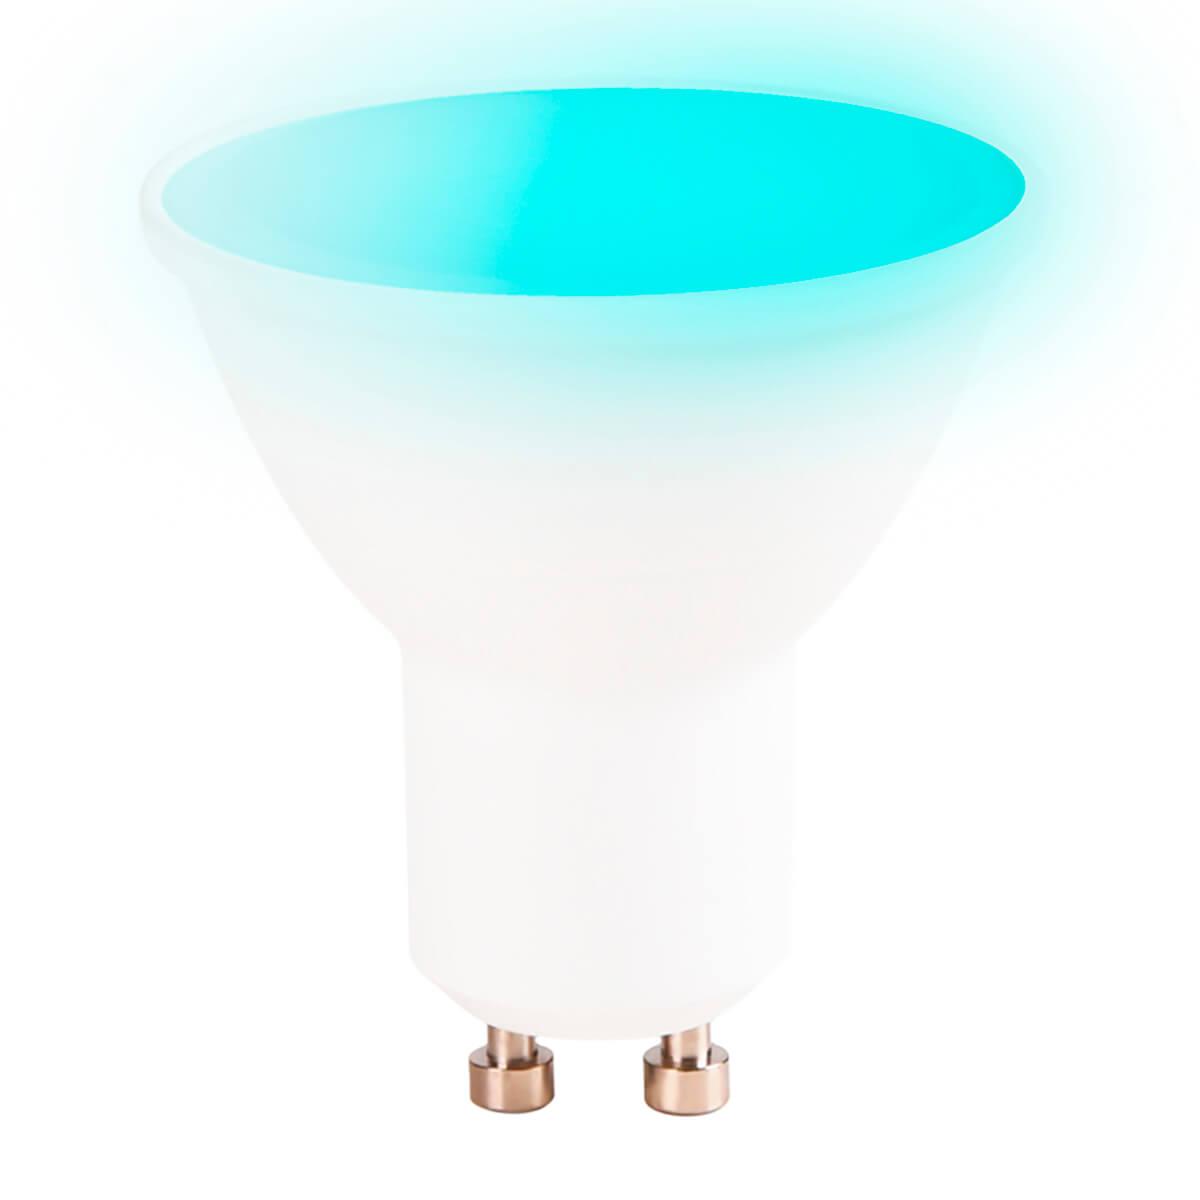 Светодиодная лампа Ambrella light 207500 Smart LED MR16 5W+RGB 3000K-6400K 220-240V